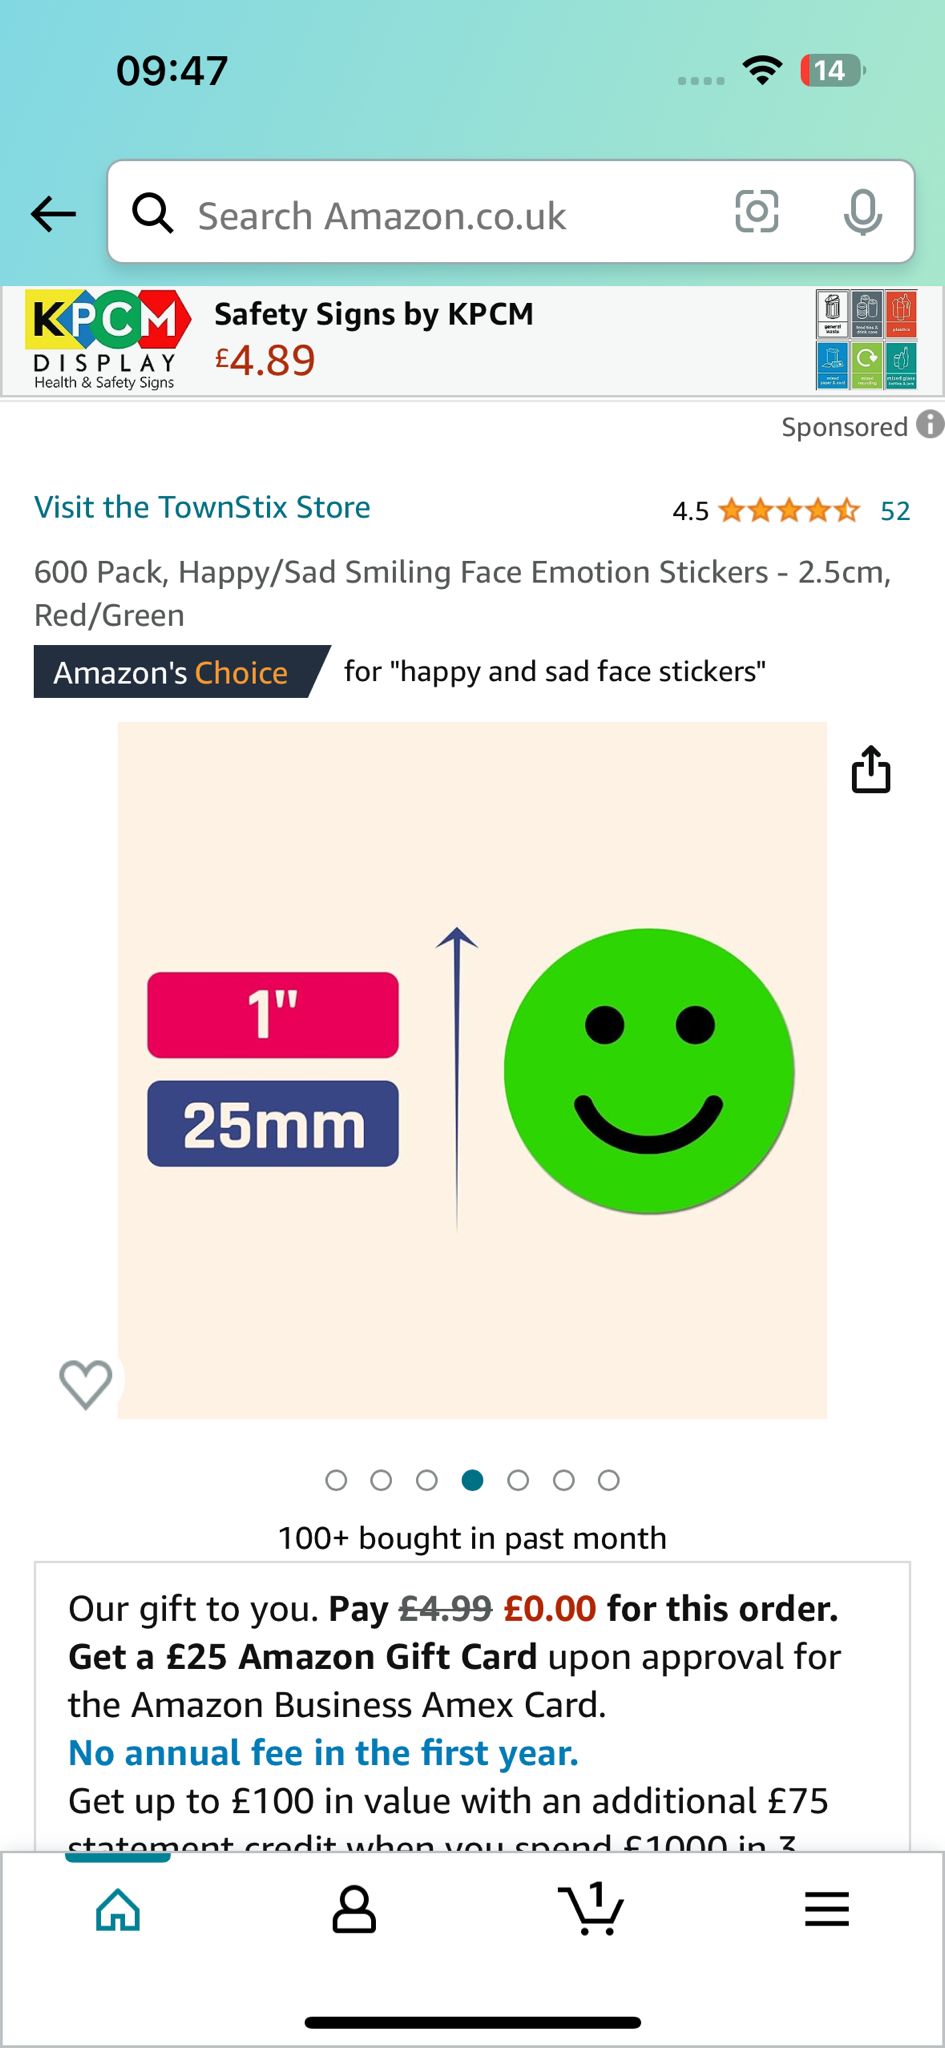 200 حزمة - مرحبا اسمي ملصقات ، 75 × 50 مم - Red 600pack Happy Sad Smilling Face Semplicers 2.5cm حديقة حمراء